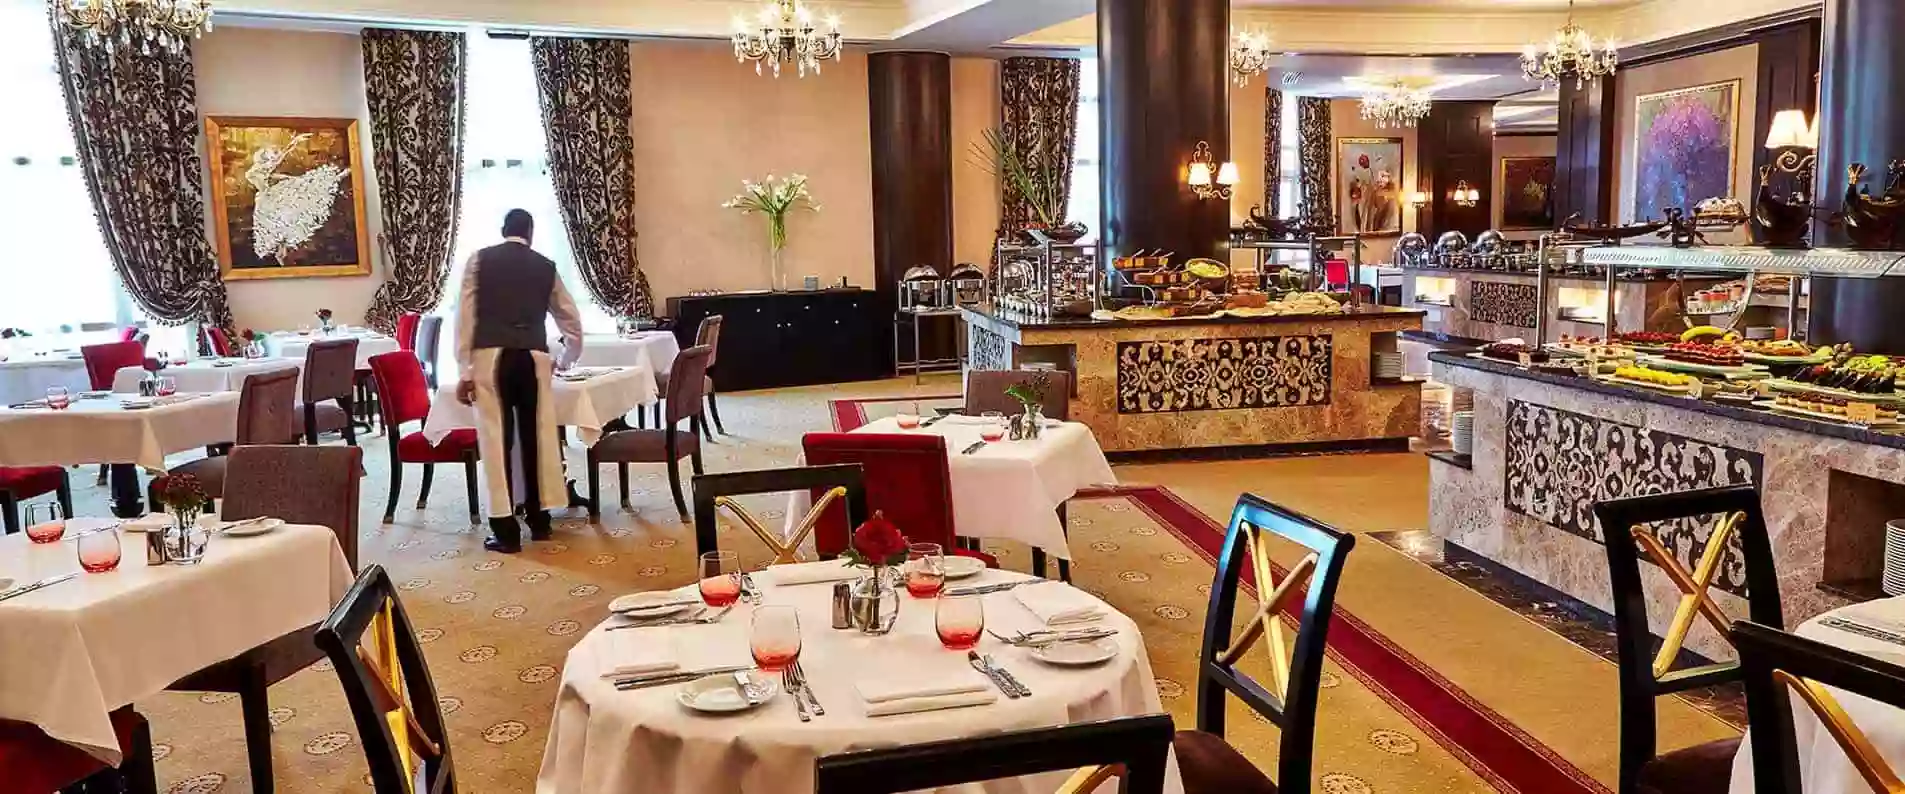 Restaurants-of-Egypt